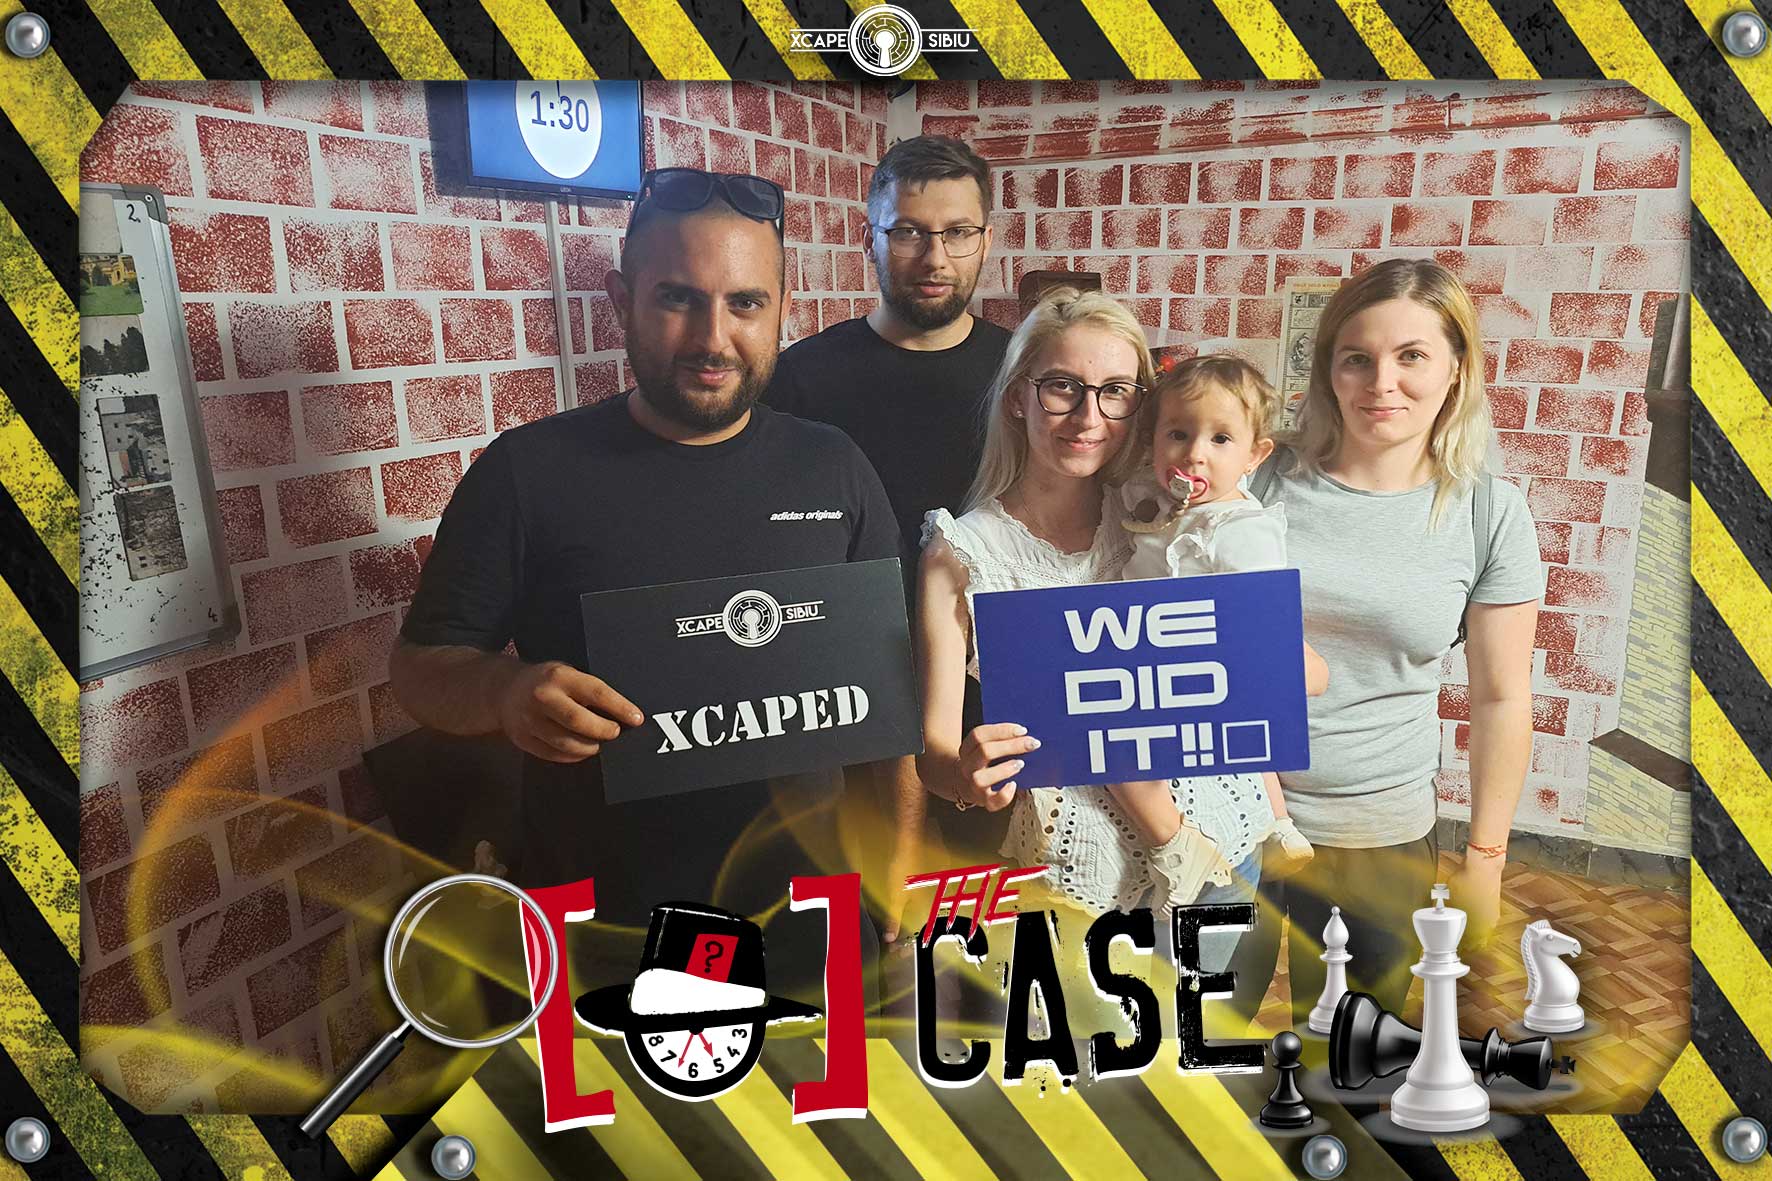 Grup de participanți fericiți după finalizarea unei camere de escape la XcapeRoomSibiu.